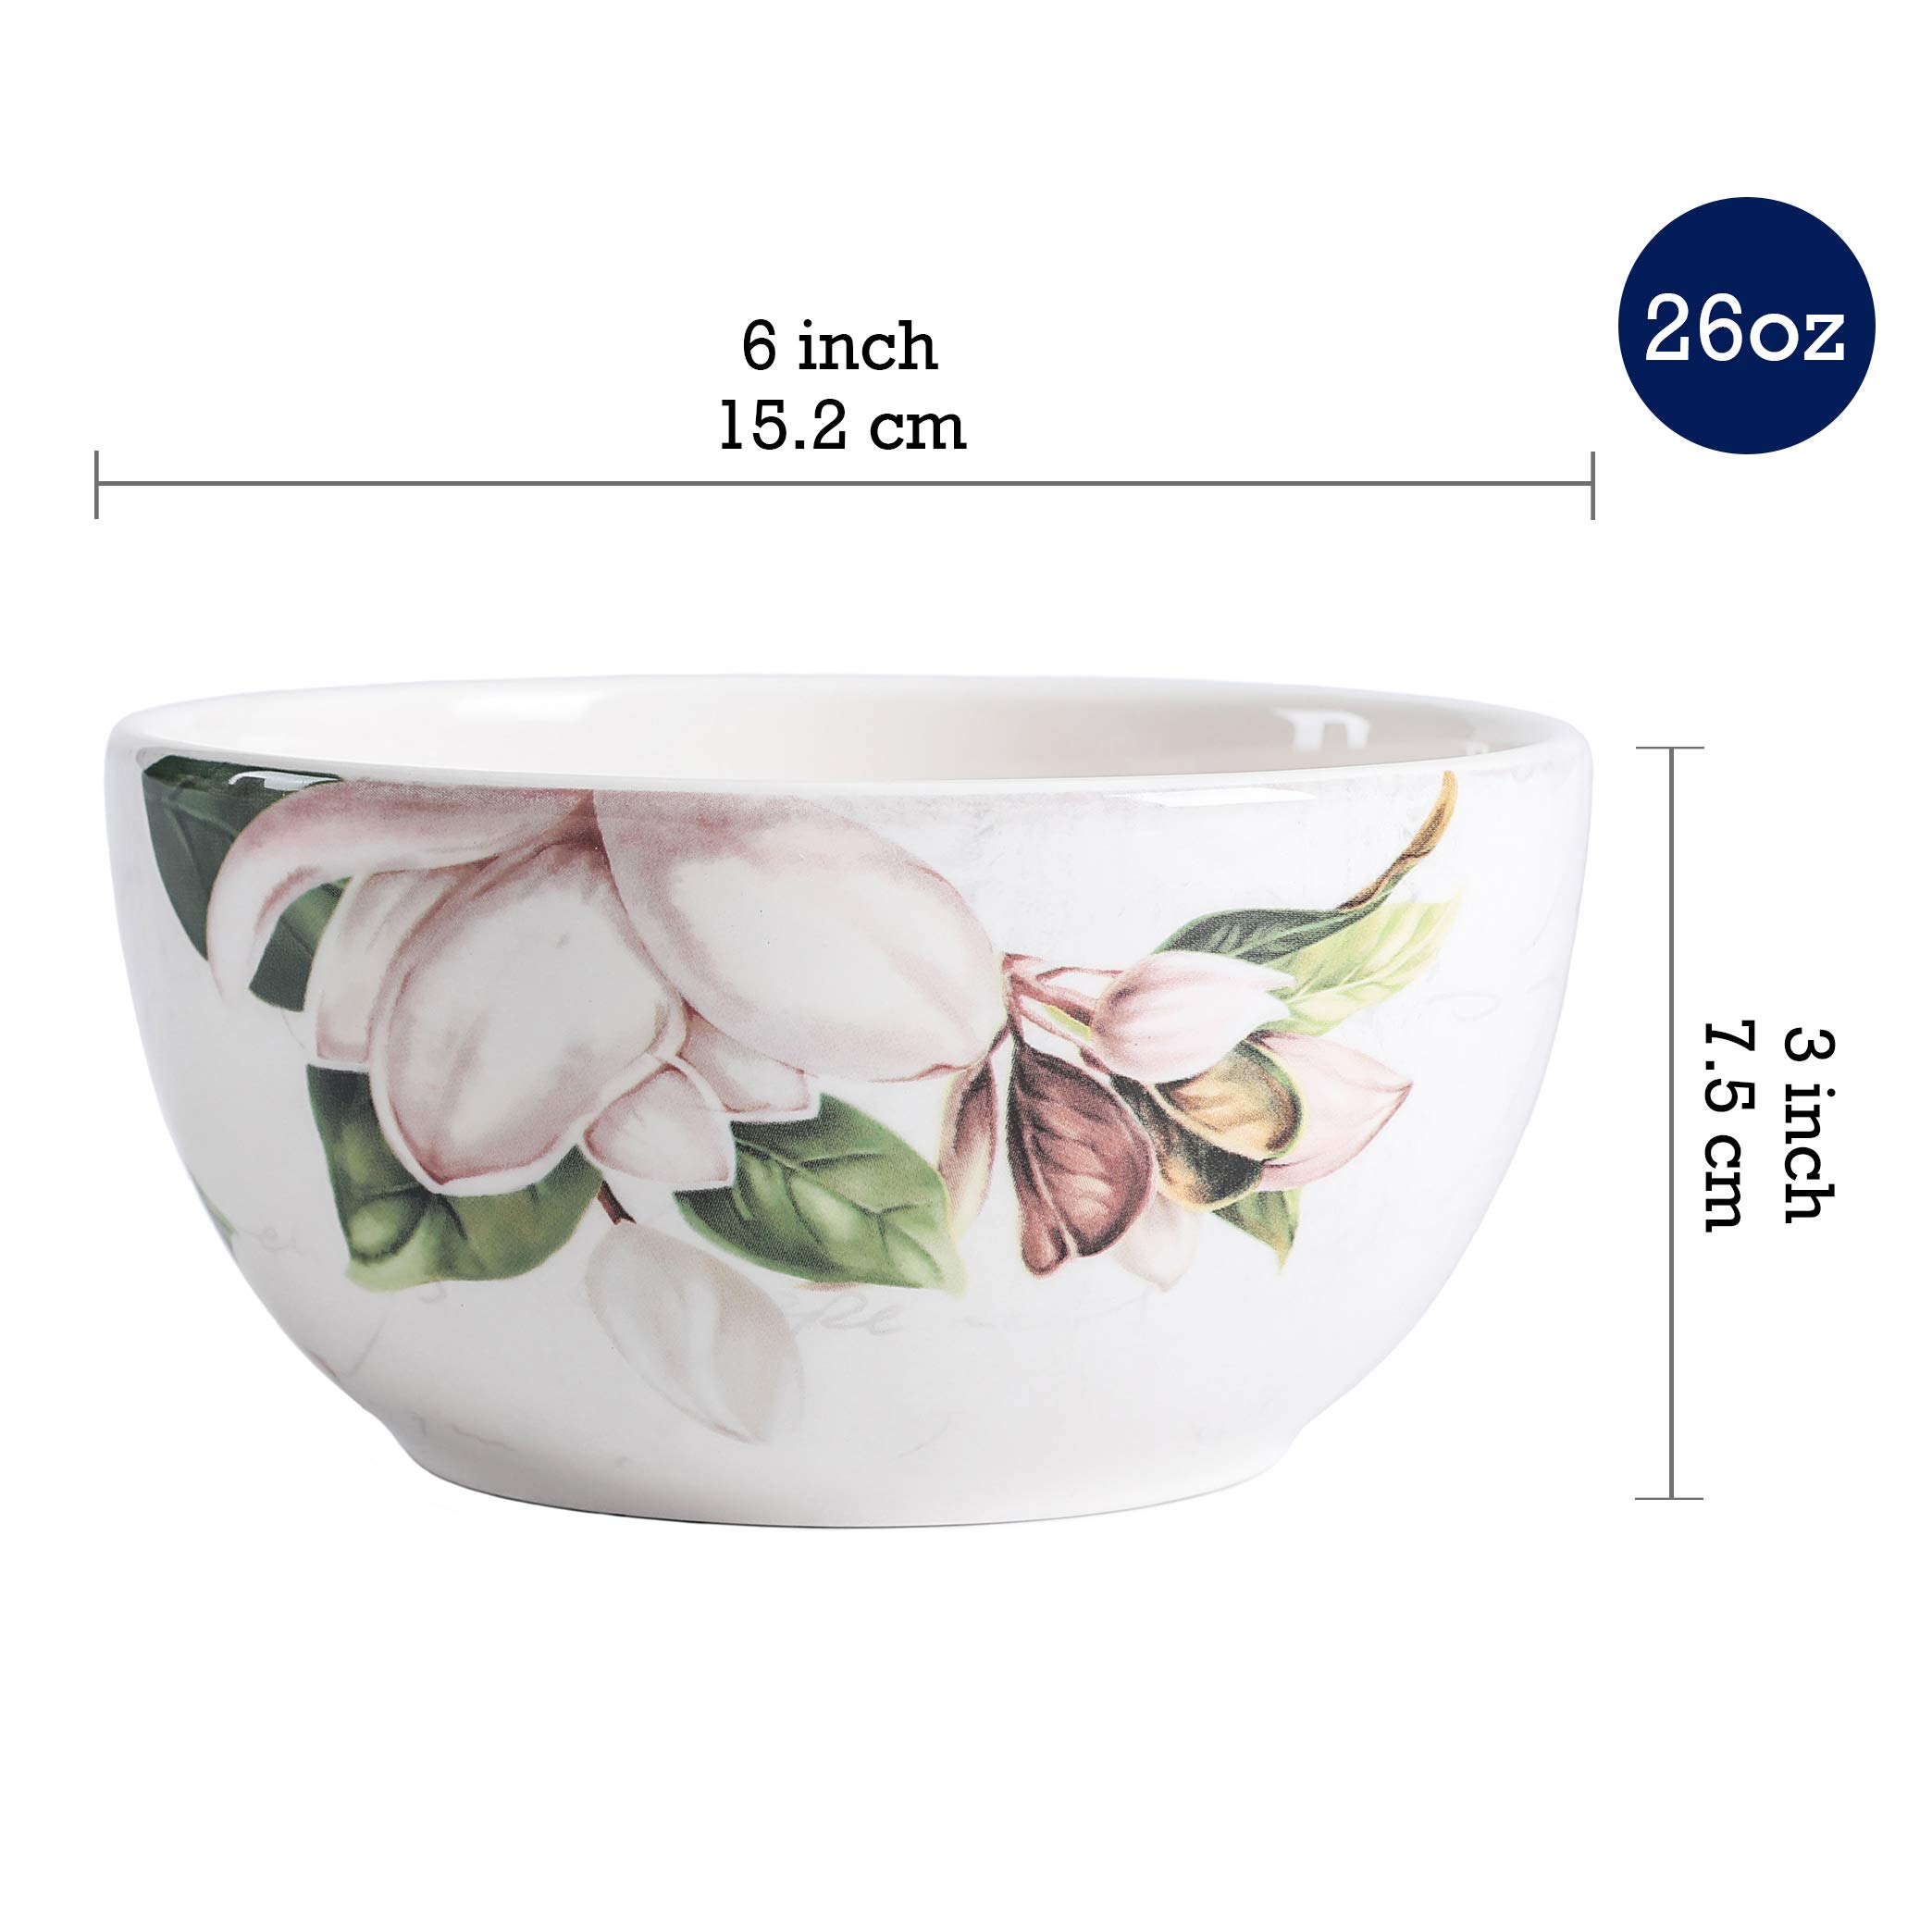 Bico Magnolia Floral Ceramic Bowls Set of 4, 26oz, for Pasta, Salad, Cereal, Soup & Microwave & Dishwasher Safe